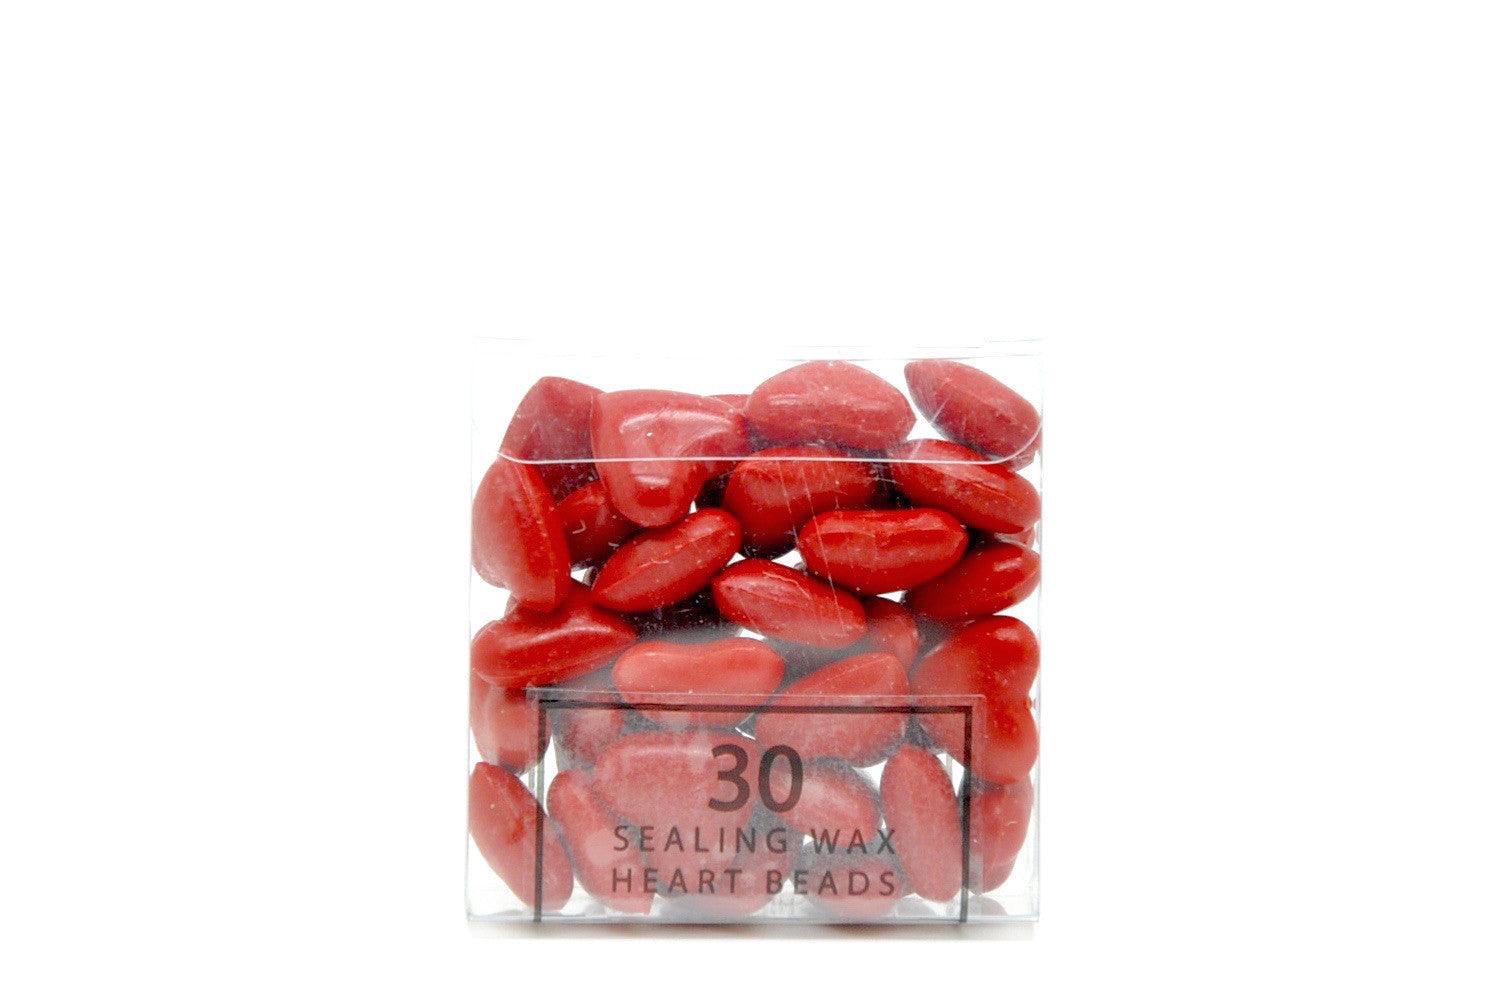 Red Sealing Wax Heart Bead - Backtozero B20 - Heart Bead, Heart Wax, Red, sale, Sealing Wax, Wax Bead